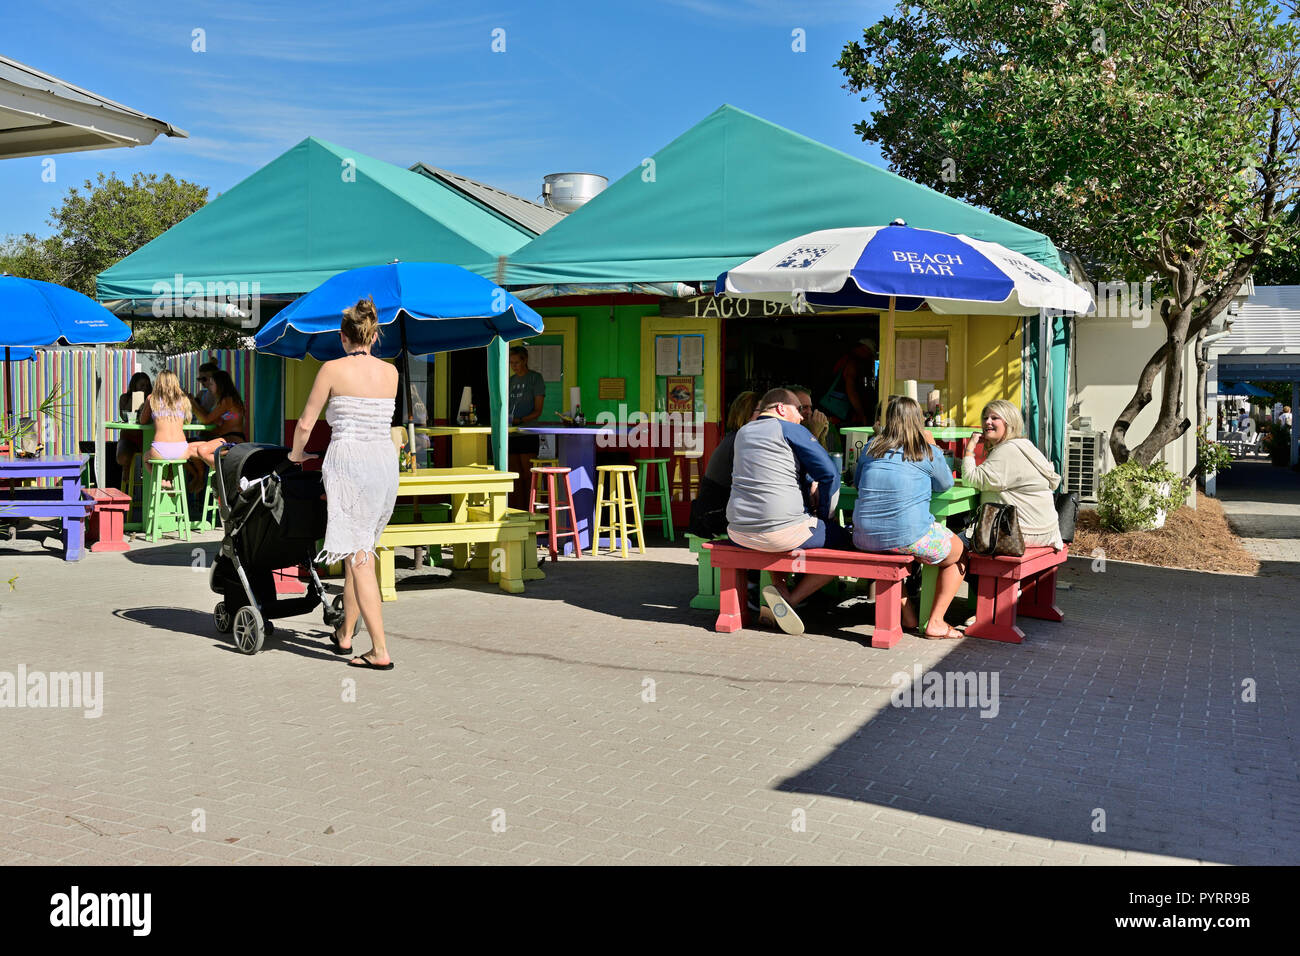 Familie, Mädchen im Teenageralter und eine Mutter mit Kinderwagen zu einem Außenpool Taco Bar Restaurant im Resort Stadt Seaside in Florida, USA. Stockfoto